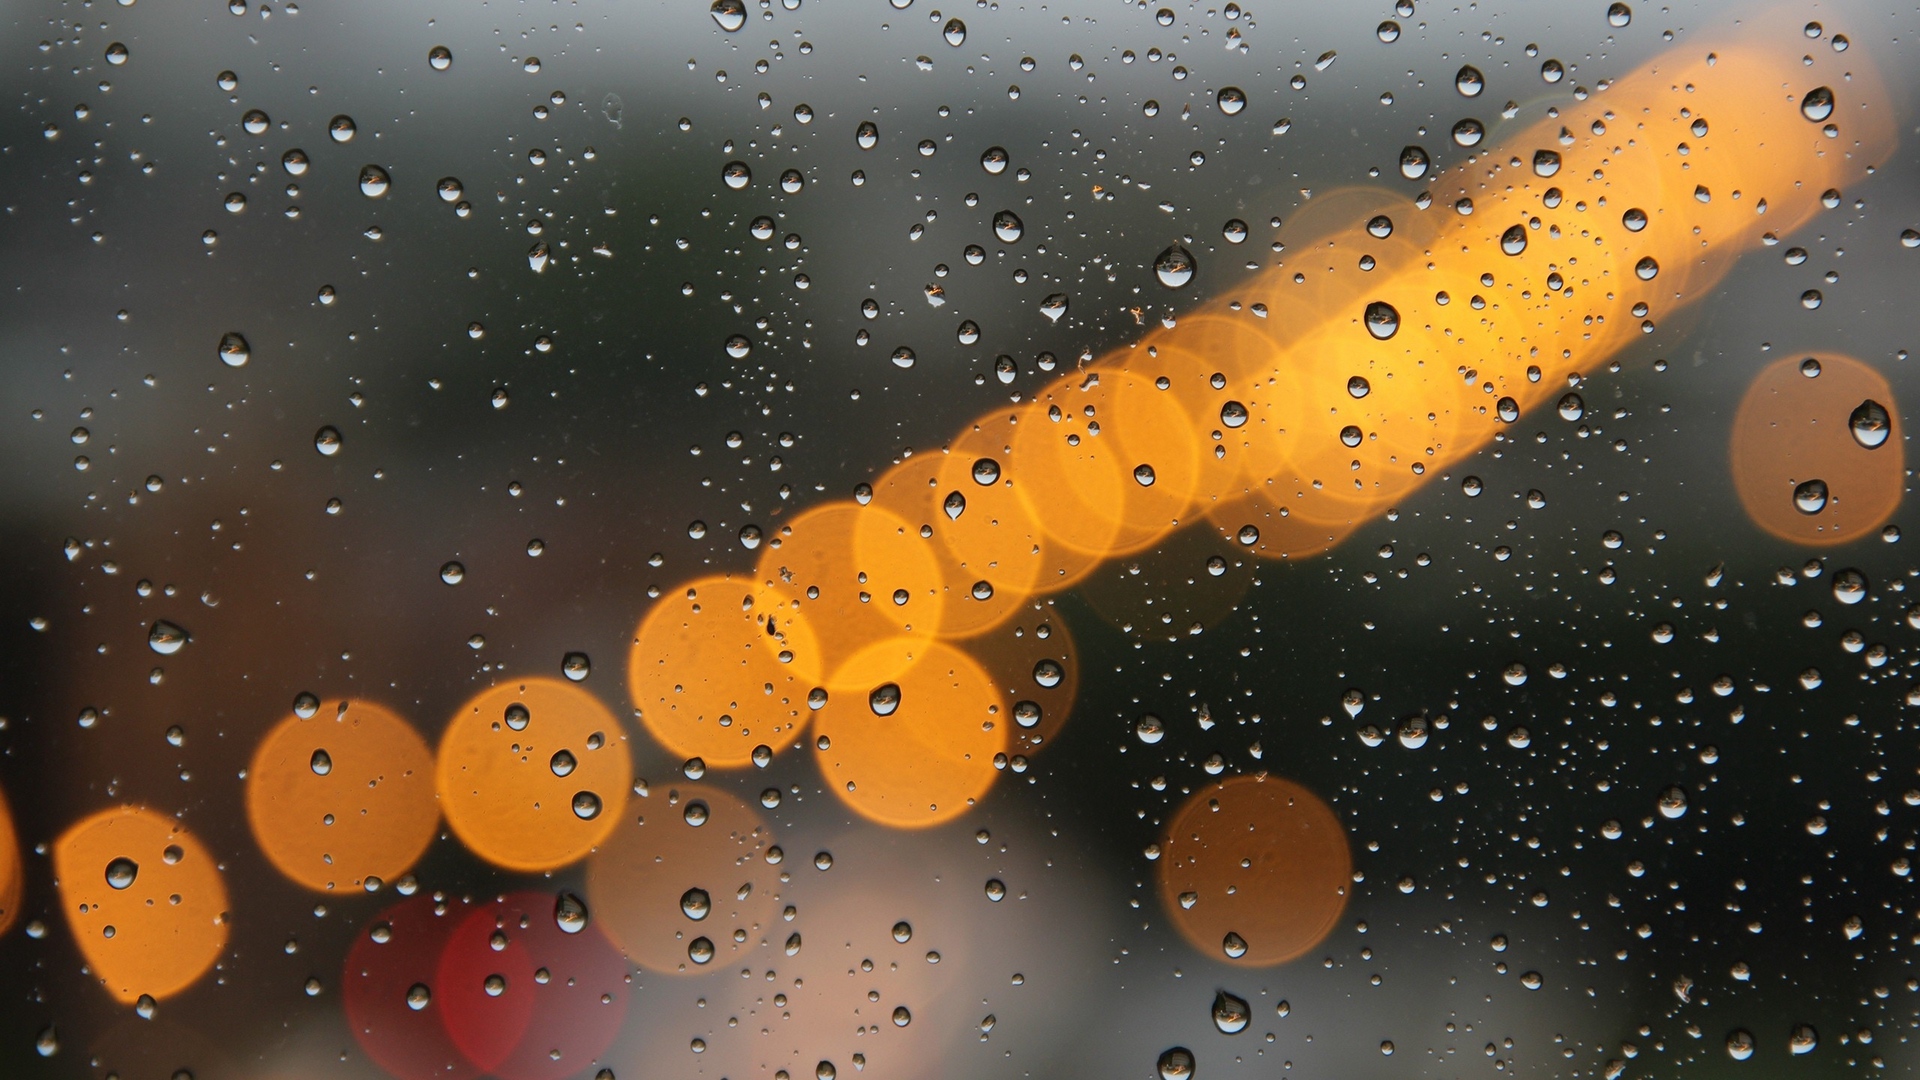 玻璃上的雨滴高清摄影大图-千库网